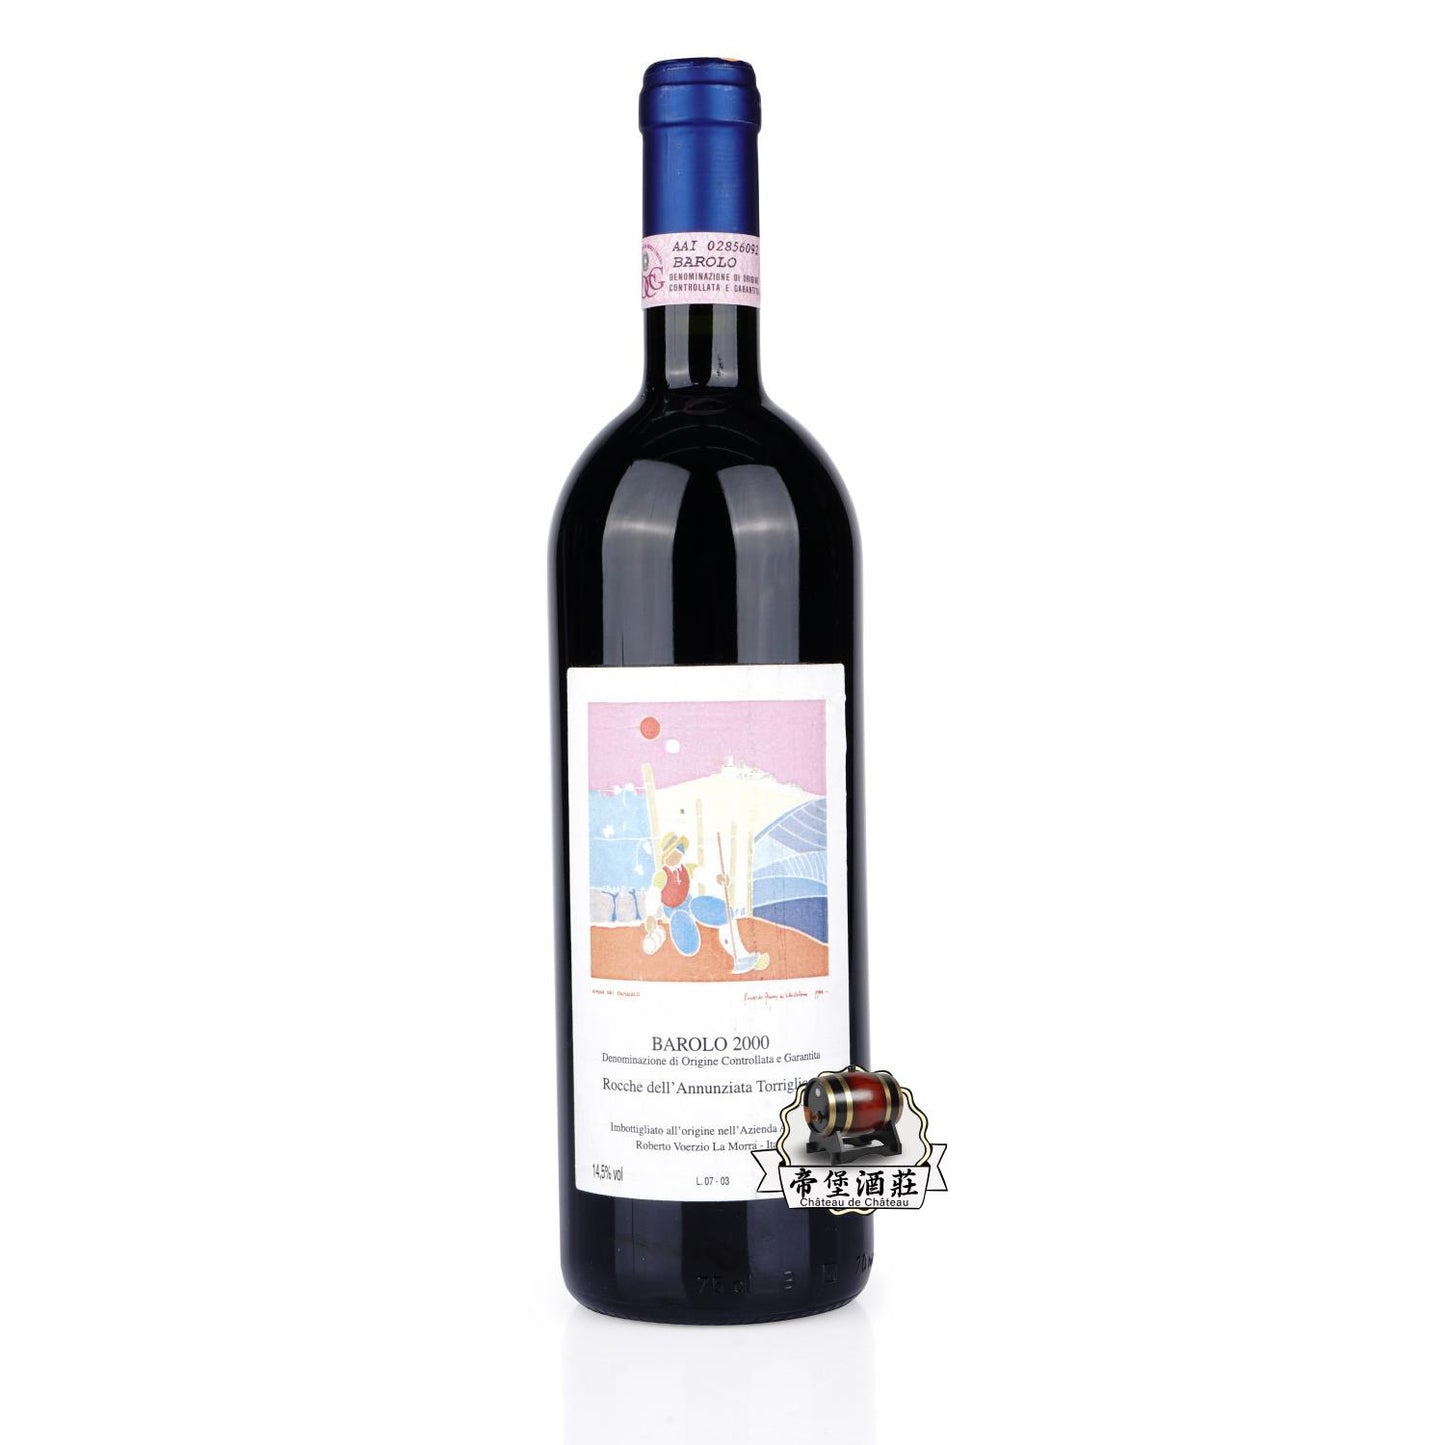 回收2000年 Roberto Voerzio Riserva vecchie viti dei Capalot e delle Brunate, Barolo 沃奇奧珍藏老藤卡帕羅-布魯納幹紅葡萄酒